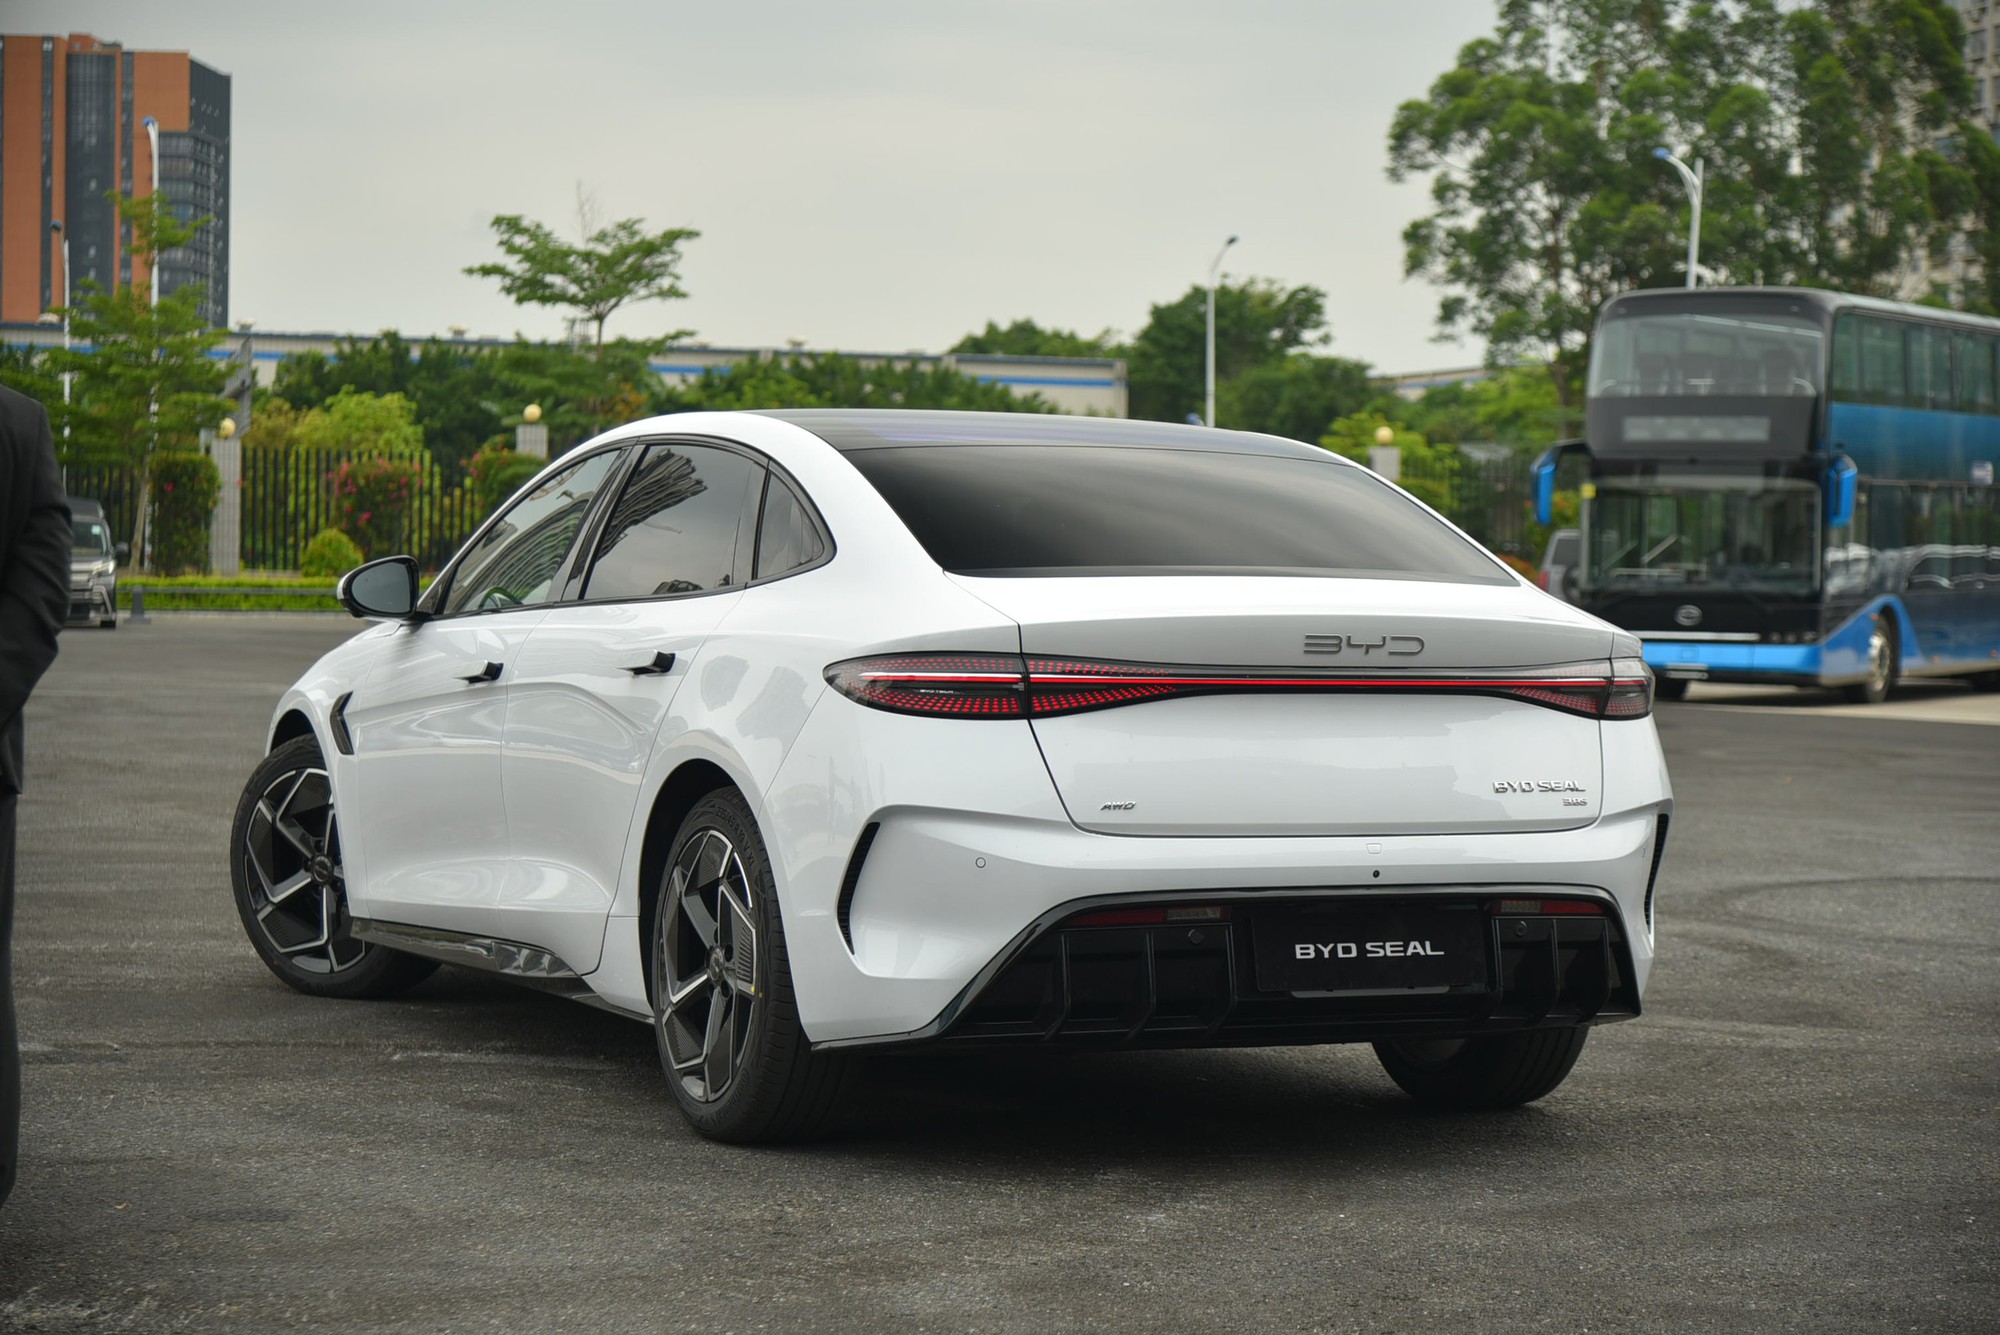 BYD Seal sắp về Việt Nam, bộ ảnh thực tế này cho thấy mẫu sedan ngang cỡ Camry này có gì 'hot' để chờ đợi- Ảnh 2.